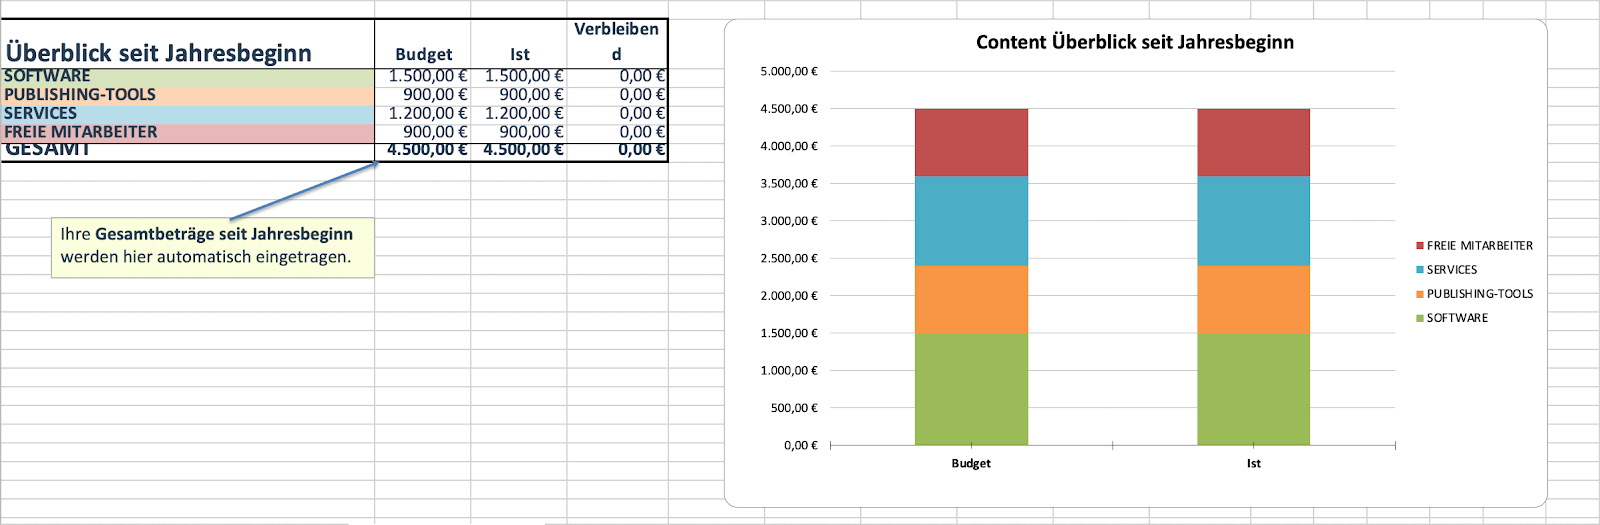 Marketing-Budget-Vorlage für Content seit Jahresbeginn in Form einer Excel-Tabelle